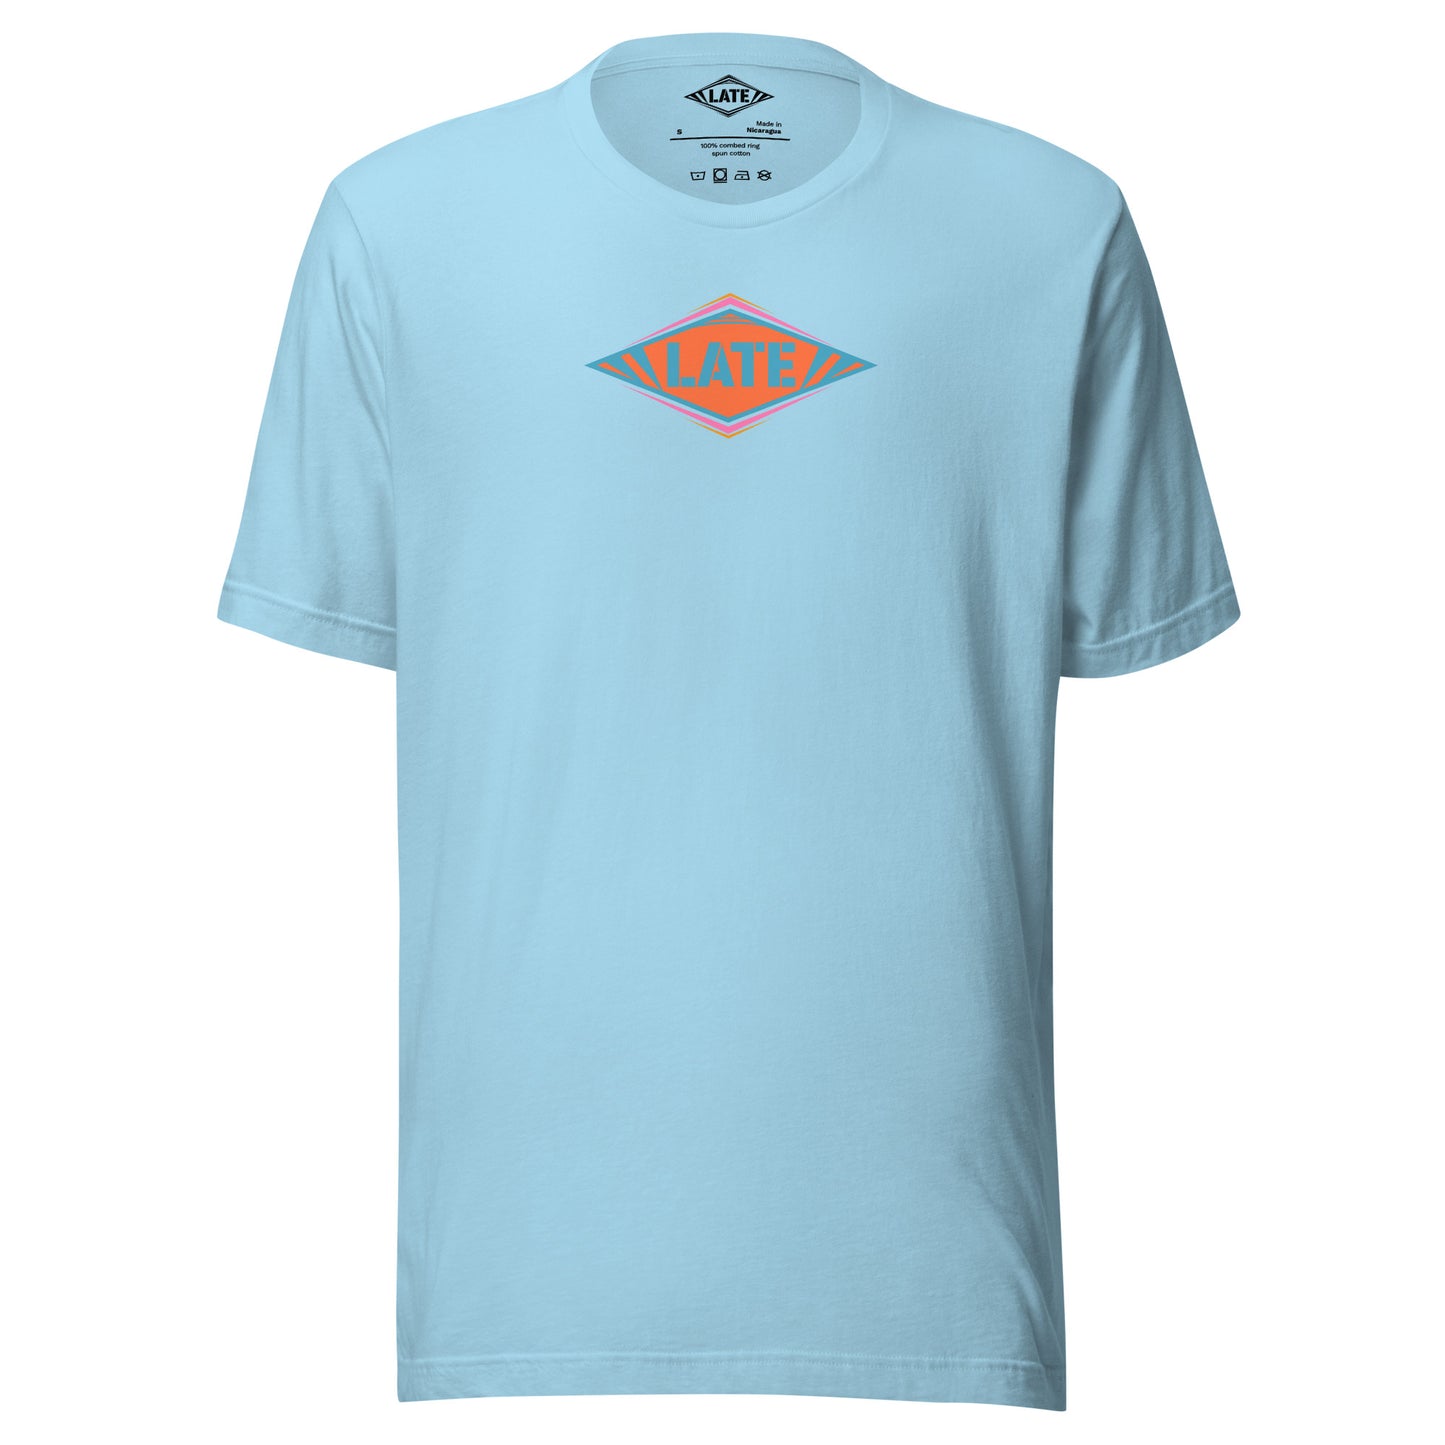 T-Shirt skateboard logo Late coloré bleu orange et violet, t-shirt unisex couleur bleu océan